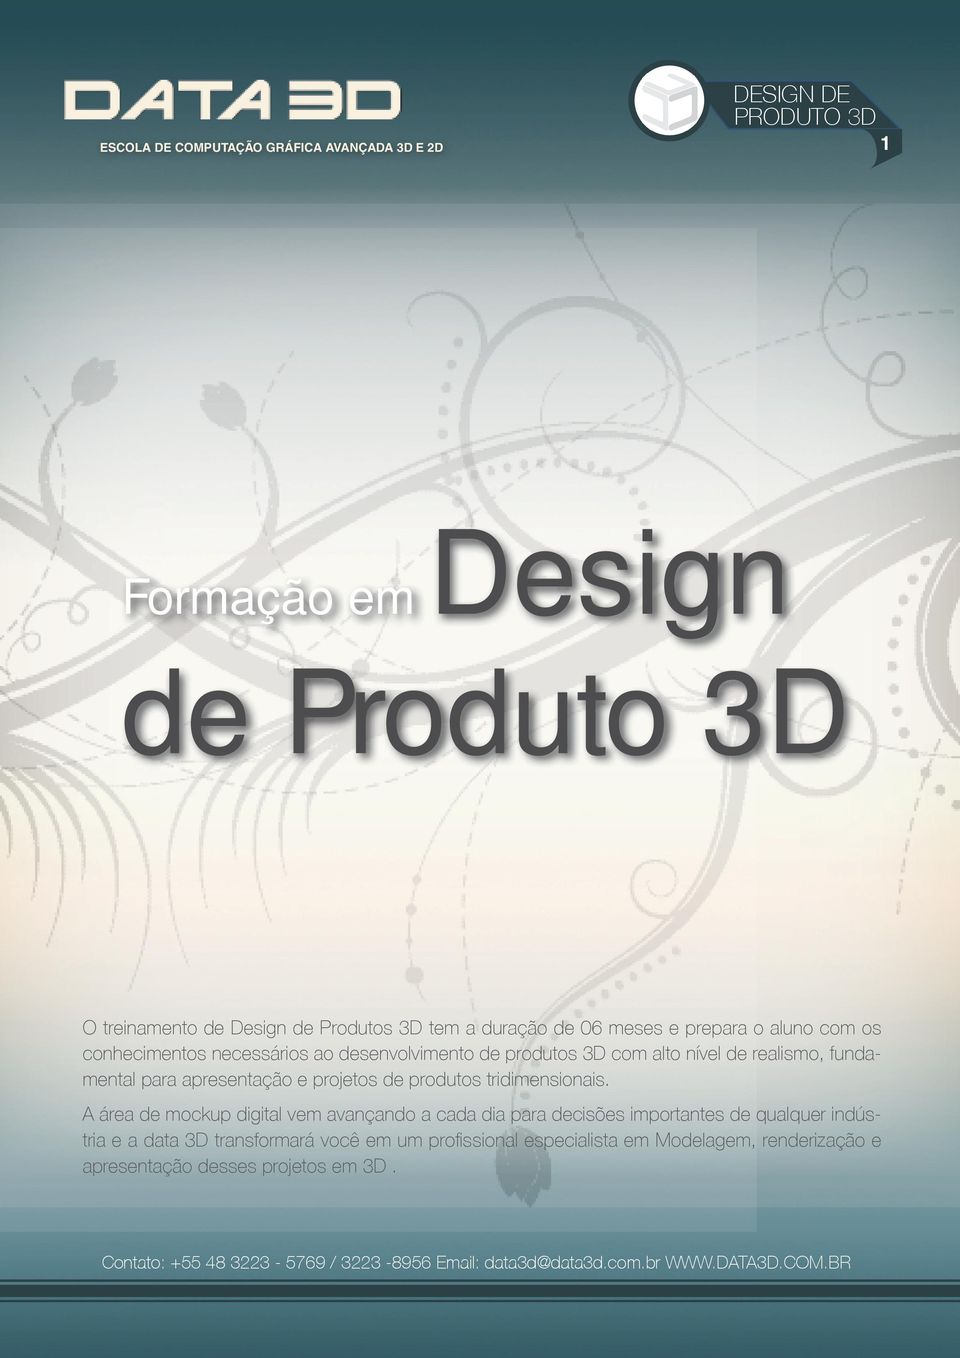 projetos de produtos tridimensionais.